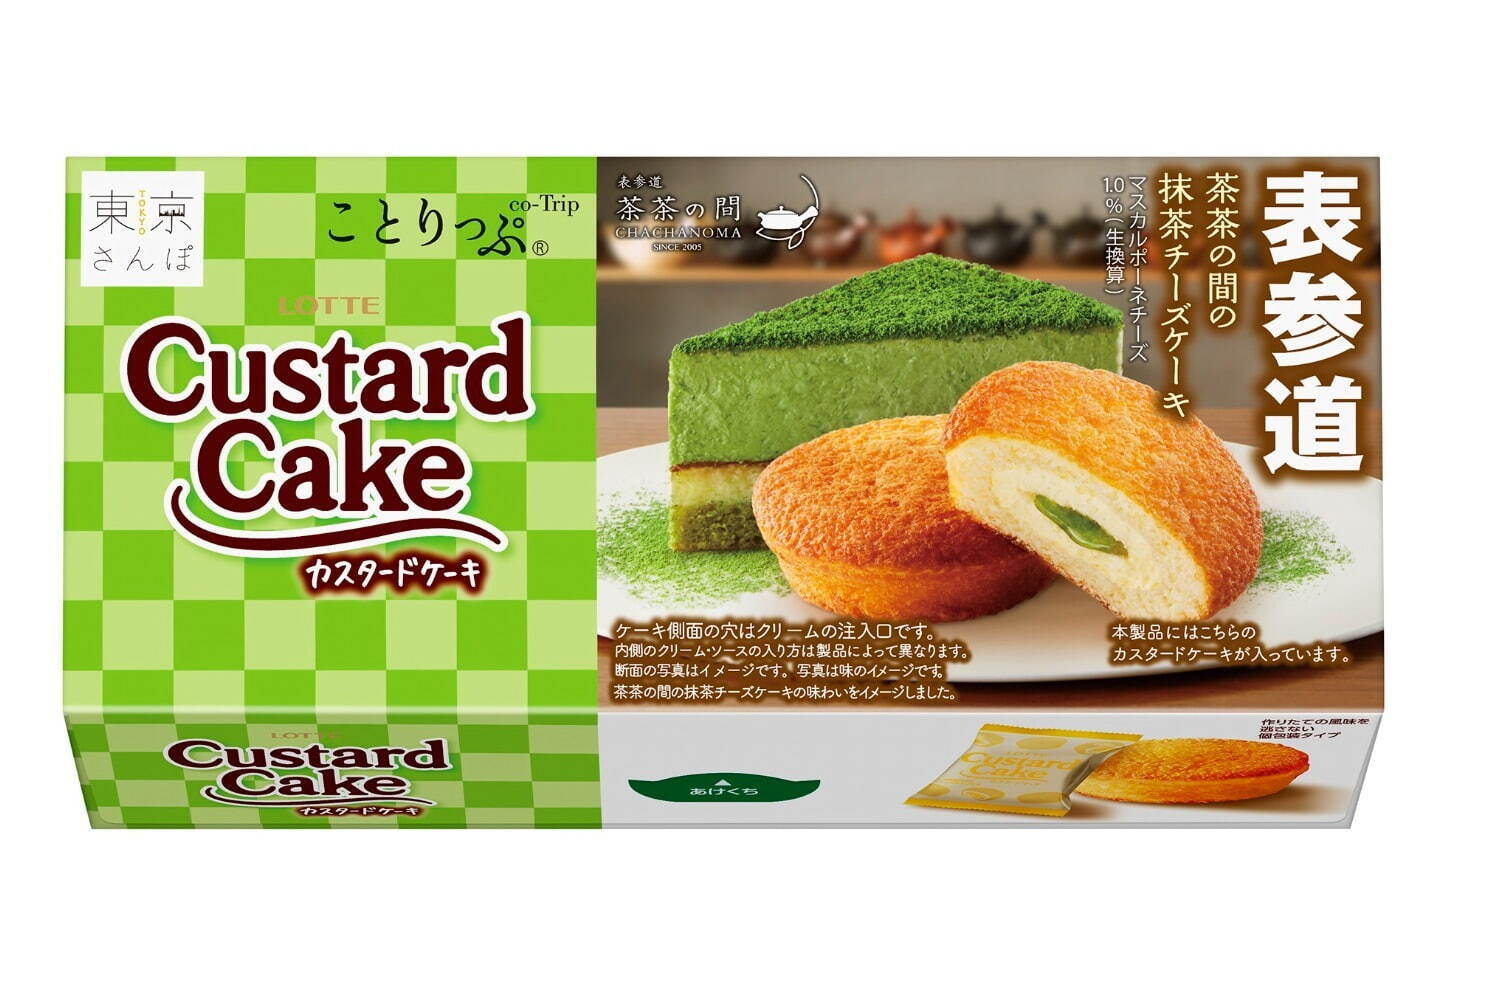 ロッテ ことりっぷ 東京 人気カフェ ふわふわパンケーキ 再現した ミニケーキ など ファッションプレス